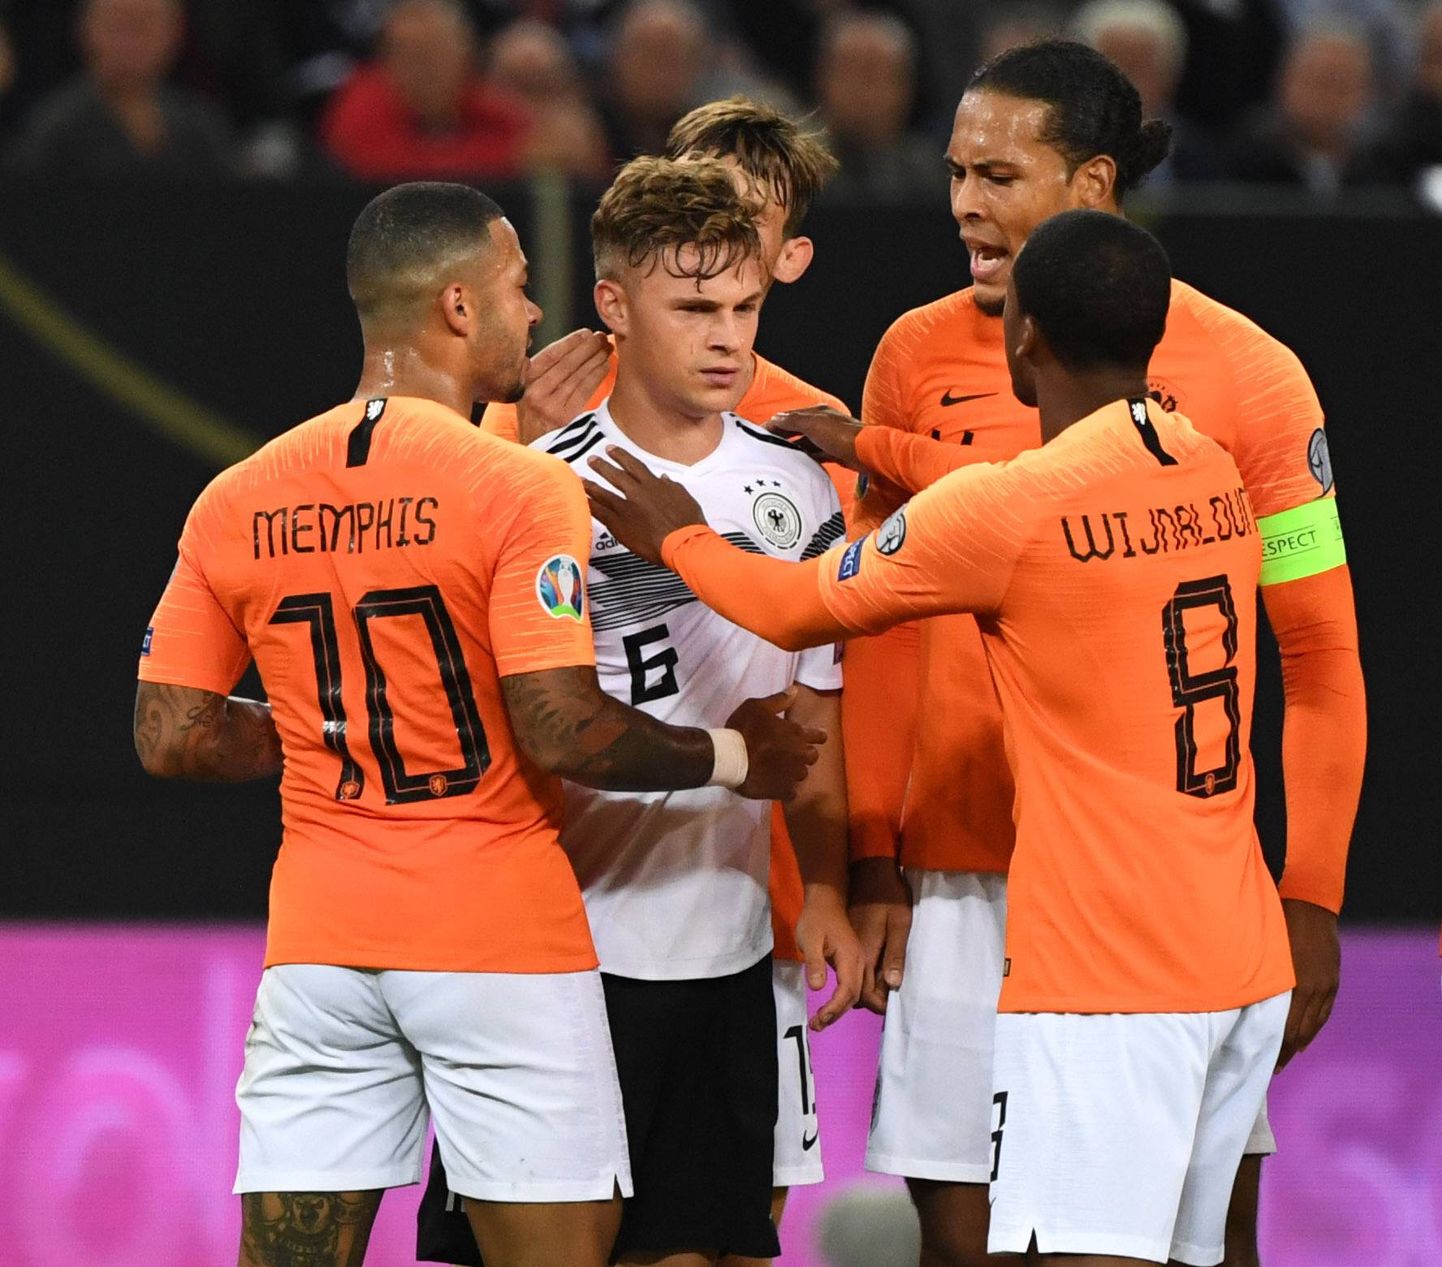 Viimati madistasid Hollandi superstaarid Saksamaaga.